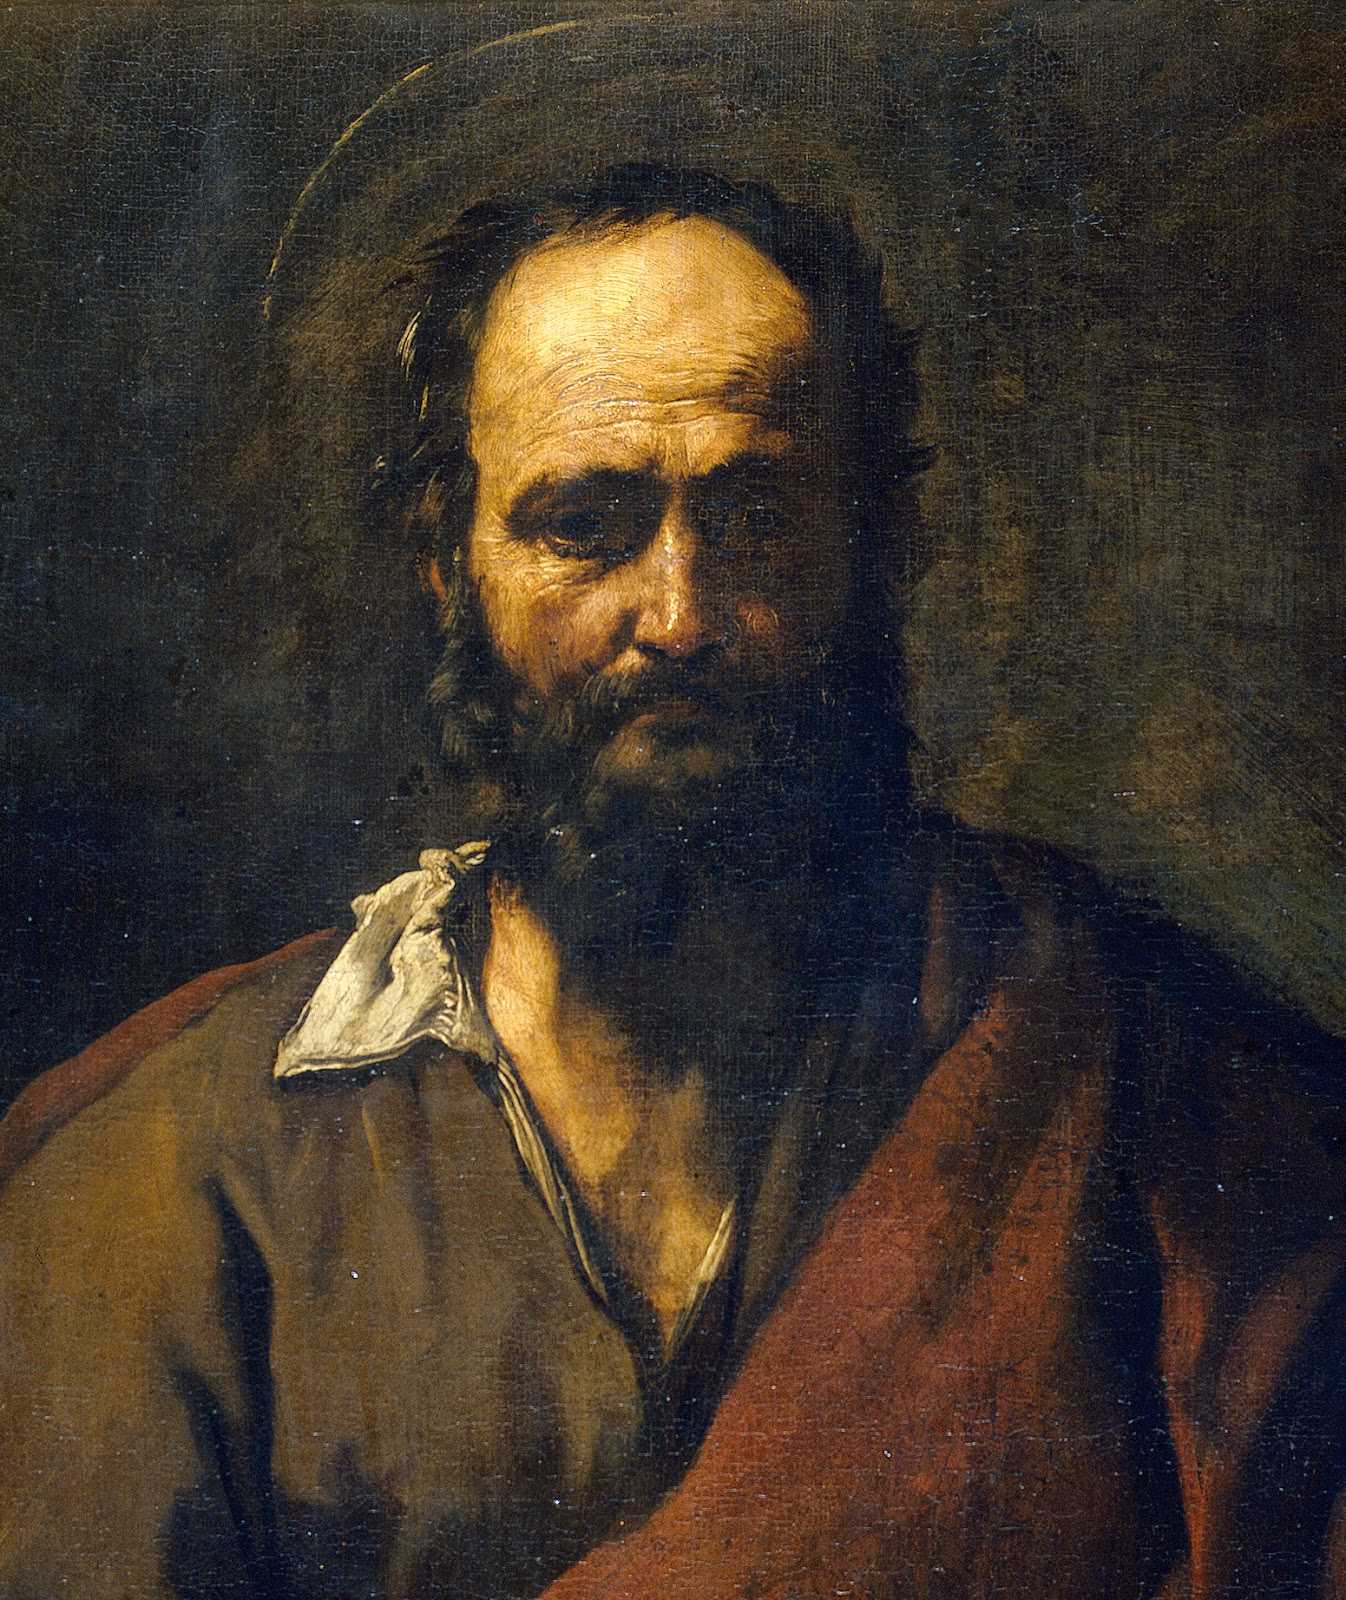 Хосе де Рибера - Хромоножка - одно из многих произведений художника